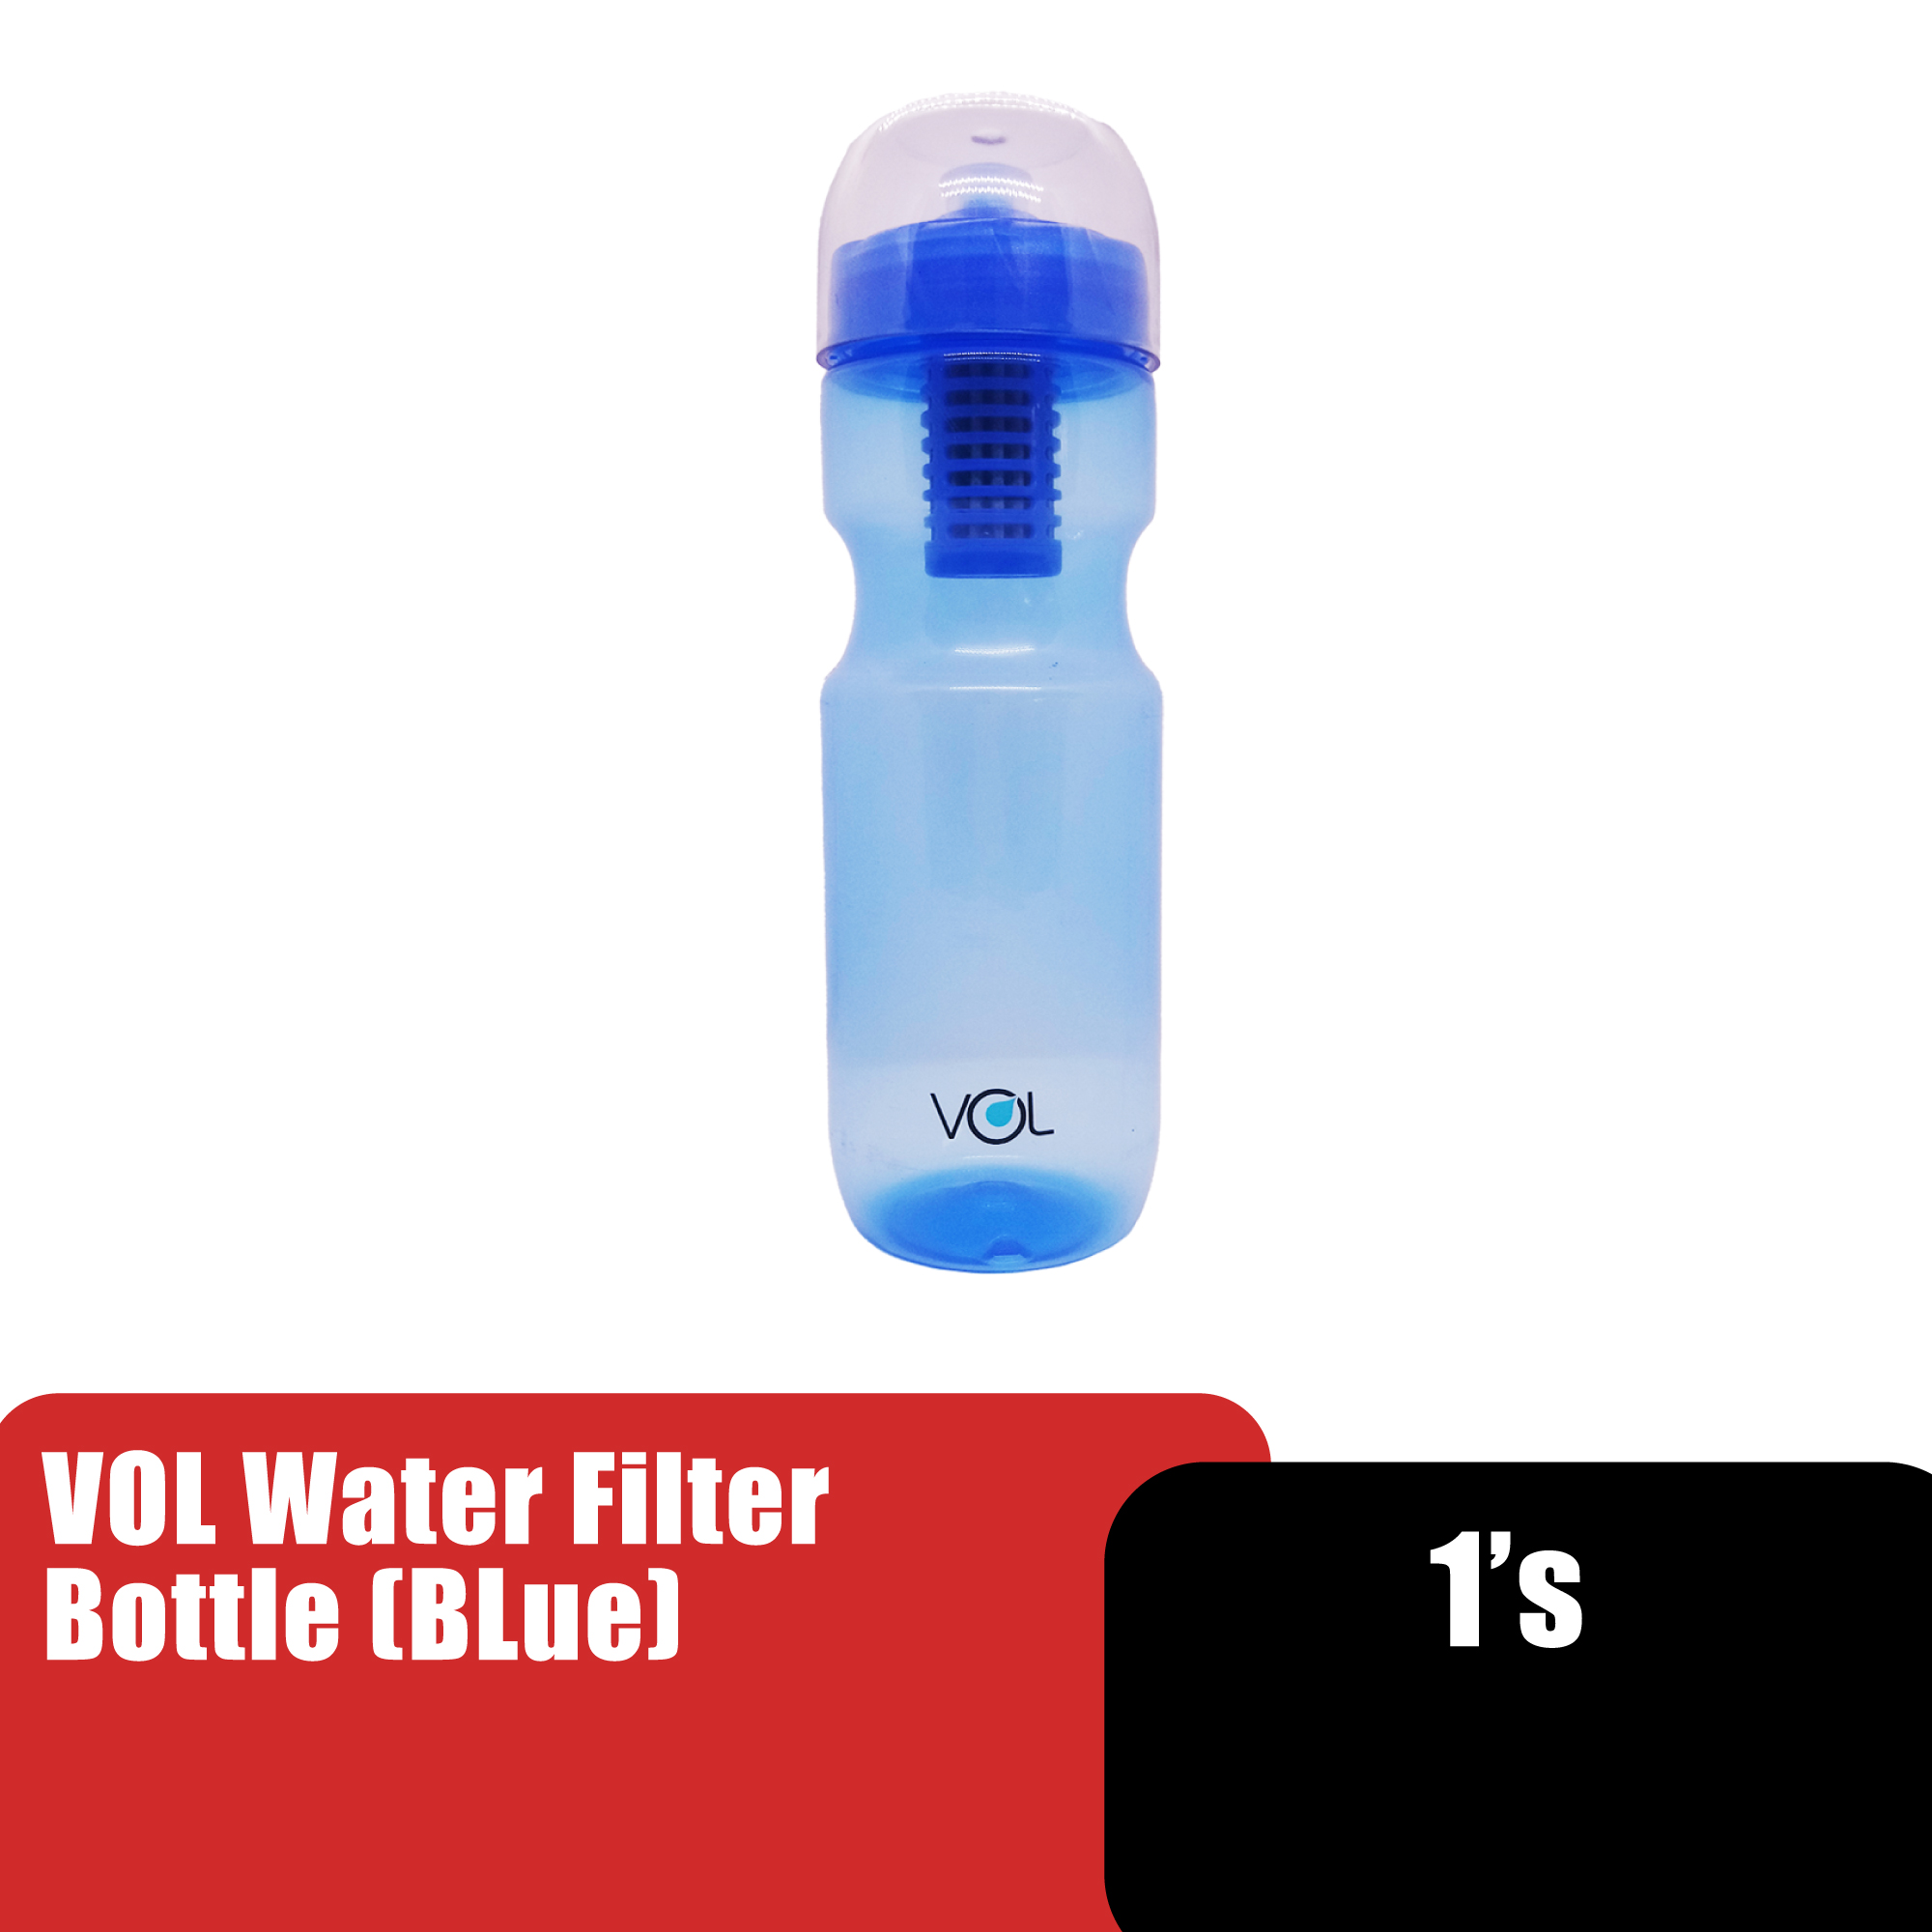 Vol Water Filter Travel Bottle, Hiking Bottle, Camping Bottle (水壶 / 水过滤器) - Blue